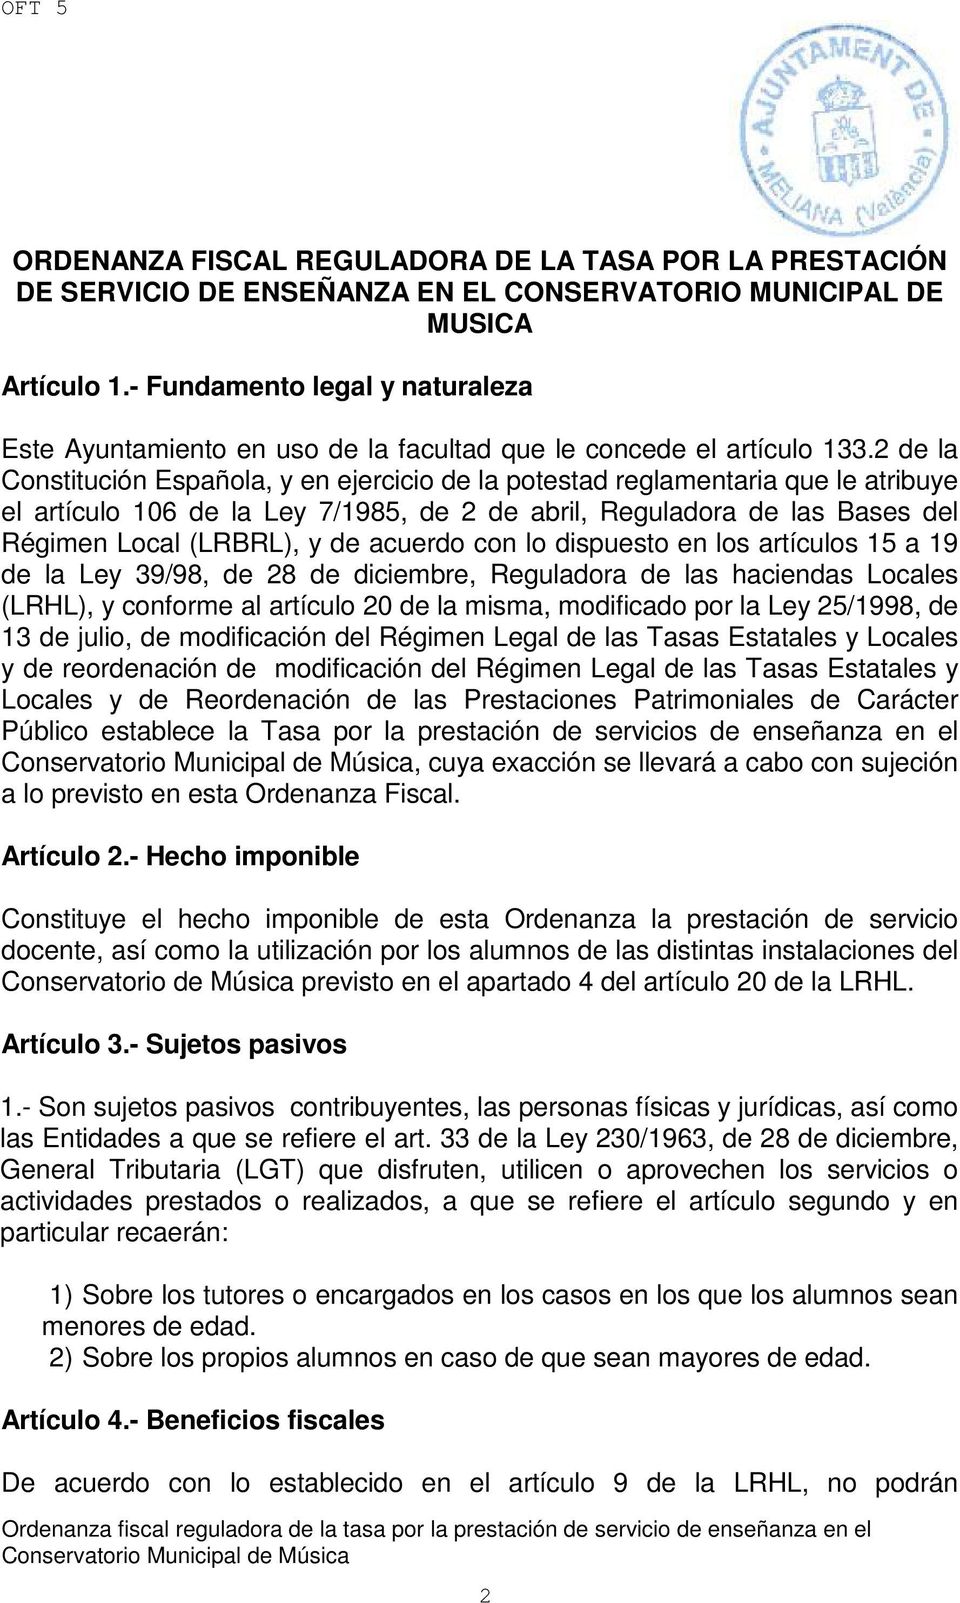 2 de la Constitución Española, y en ejercicio de la potestad reglamentaria que le atribuye el artículo 106 de la Ley 7/1985, de 2 de abril, Reguladora de las Bases del Régimen Local (LRBRL), y de